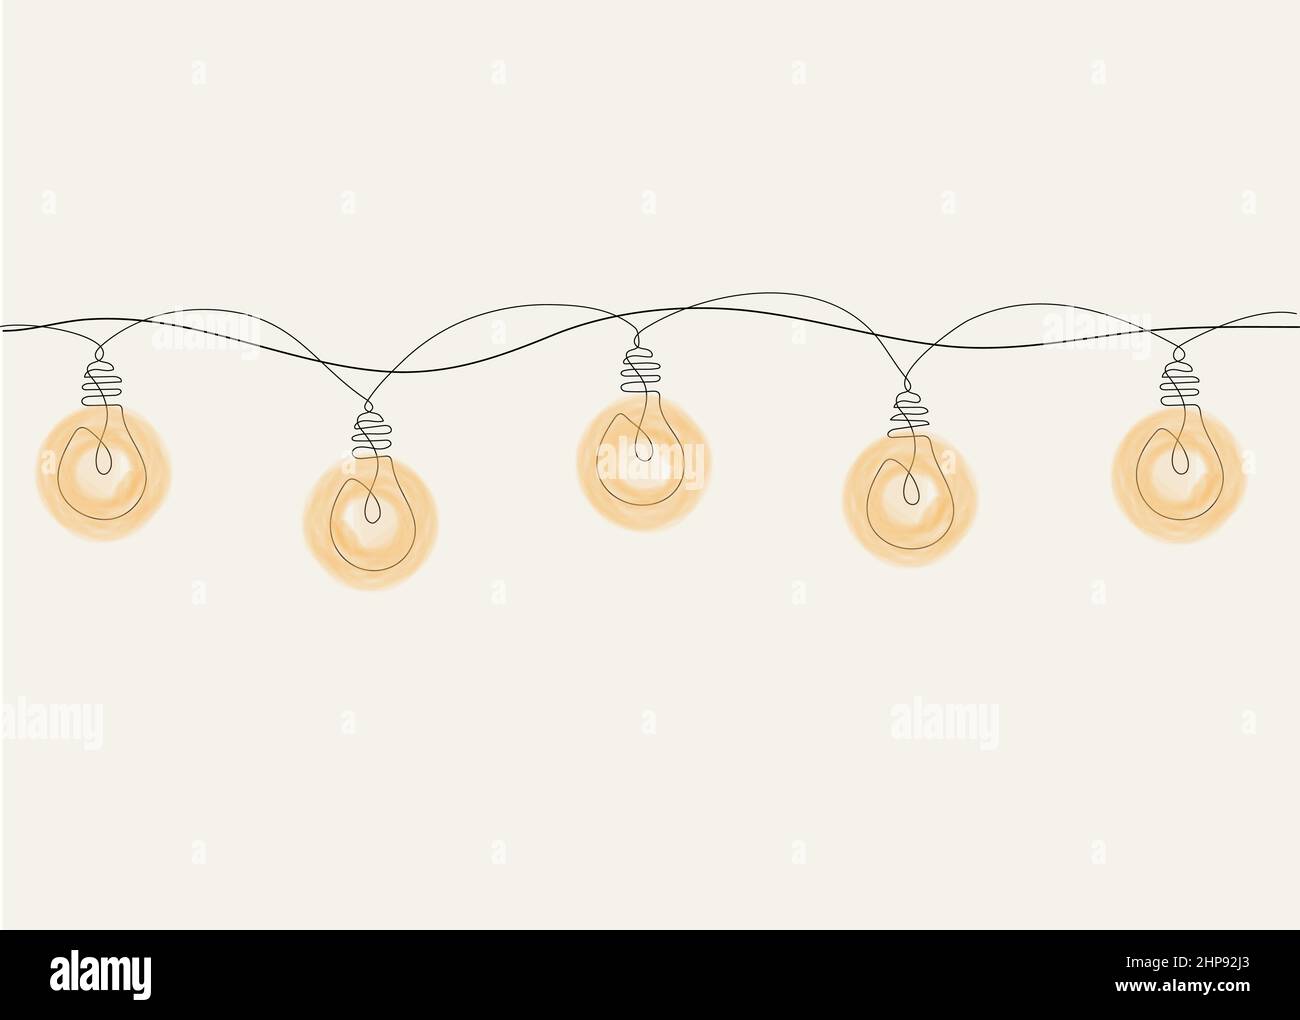 Eine Linienzeichnung einer Weihnachtsgirlande mit Glühbirnen. Stock Vektor